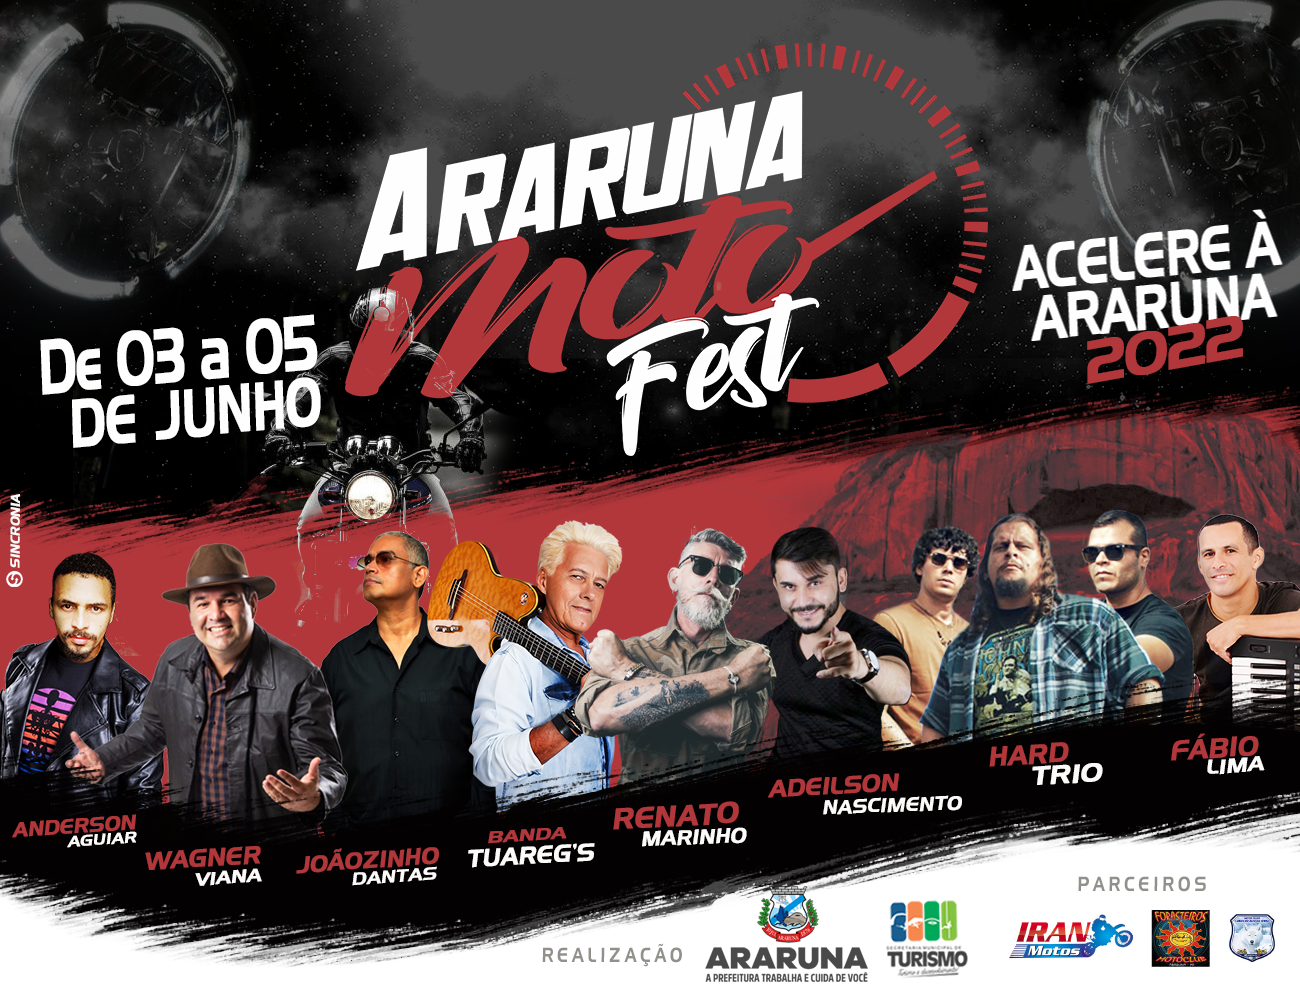 Está chegando a hora! 9º Araruna Moto Fest será realizado de 03 a 05 de junho